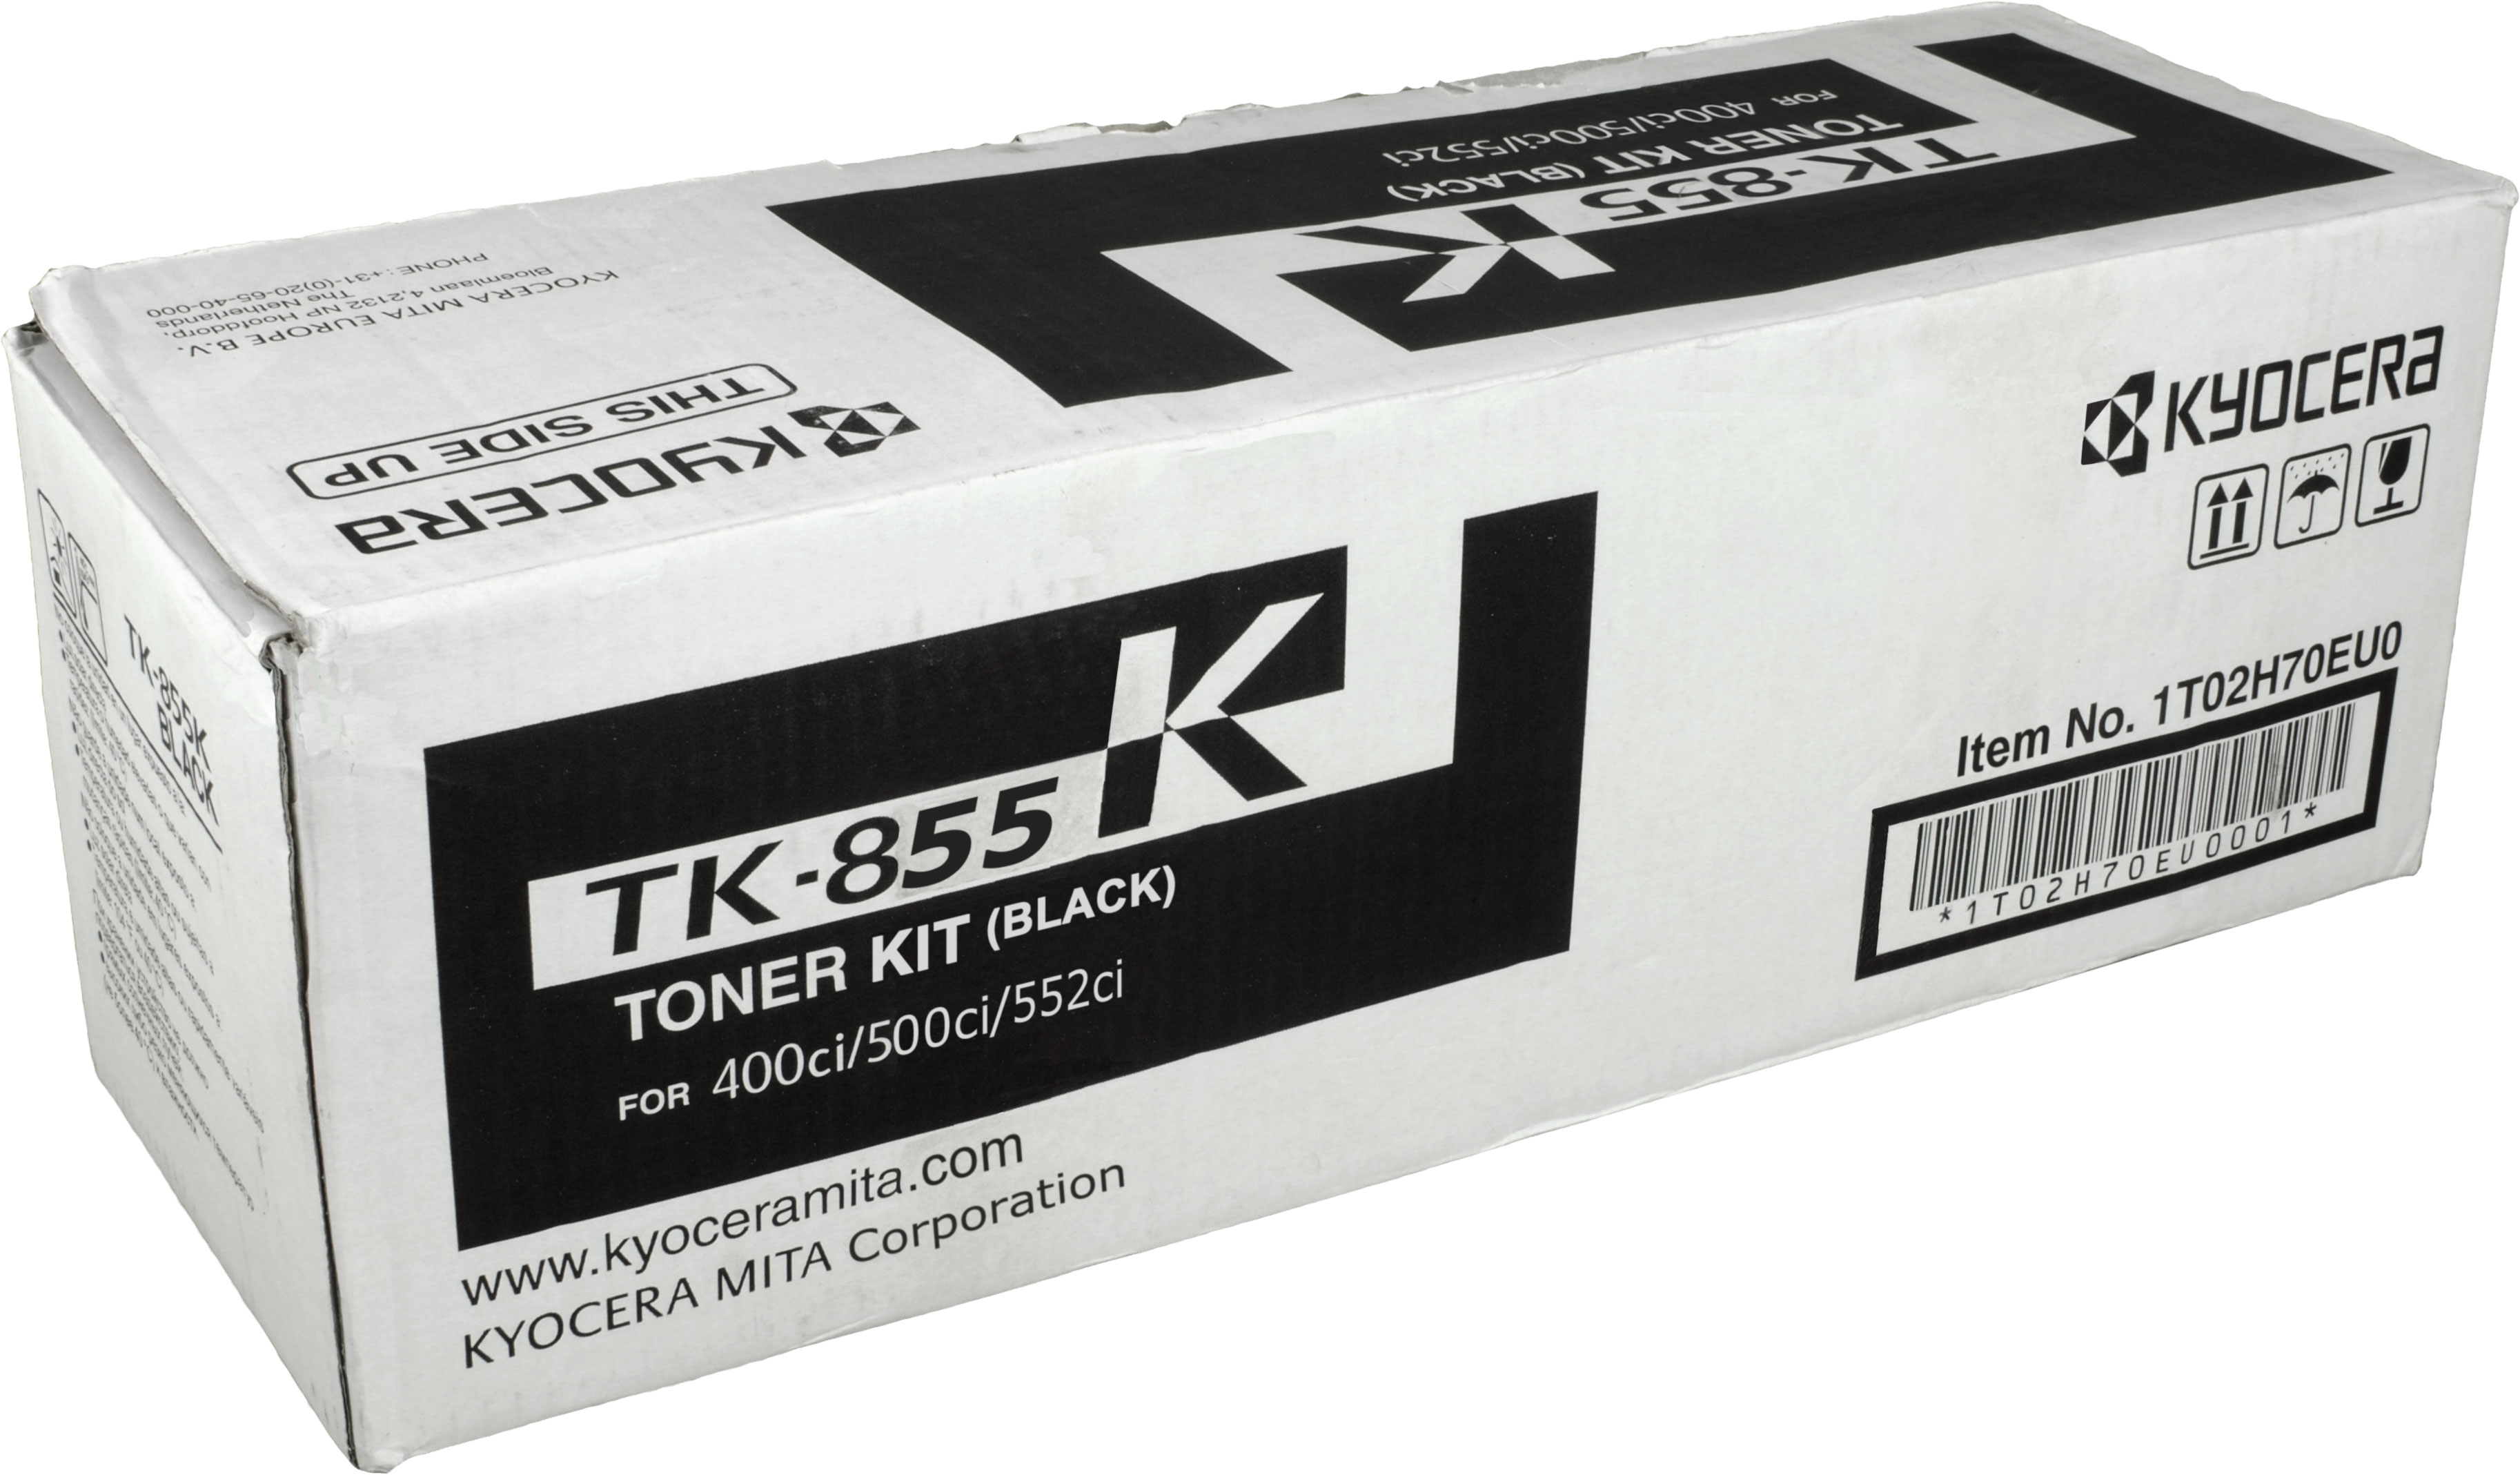 KYOCERA schwarz TK-855K Toner